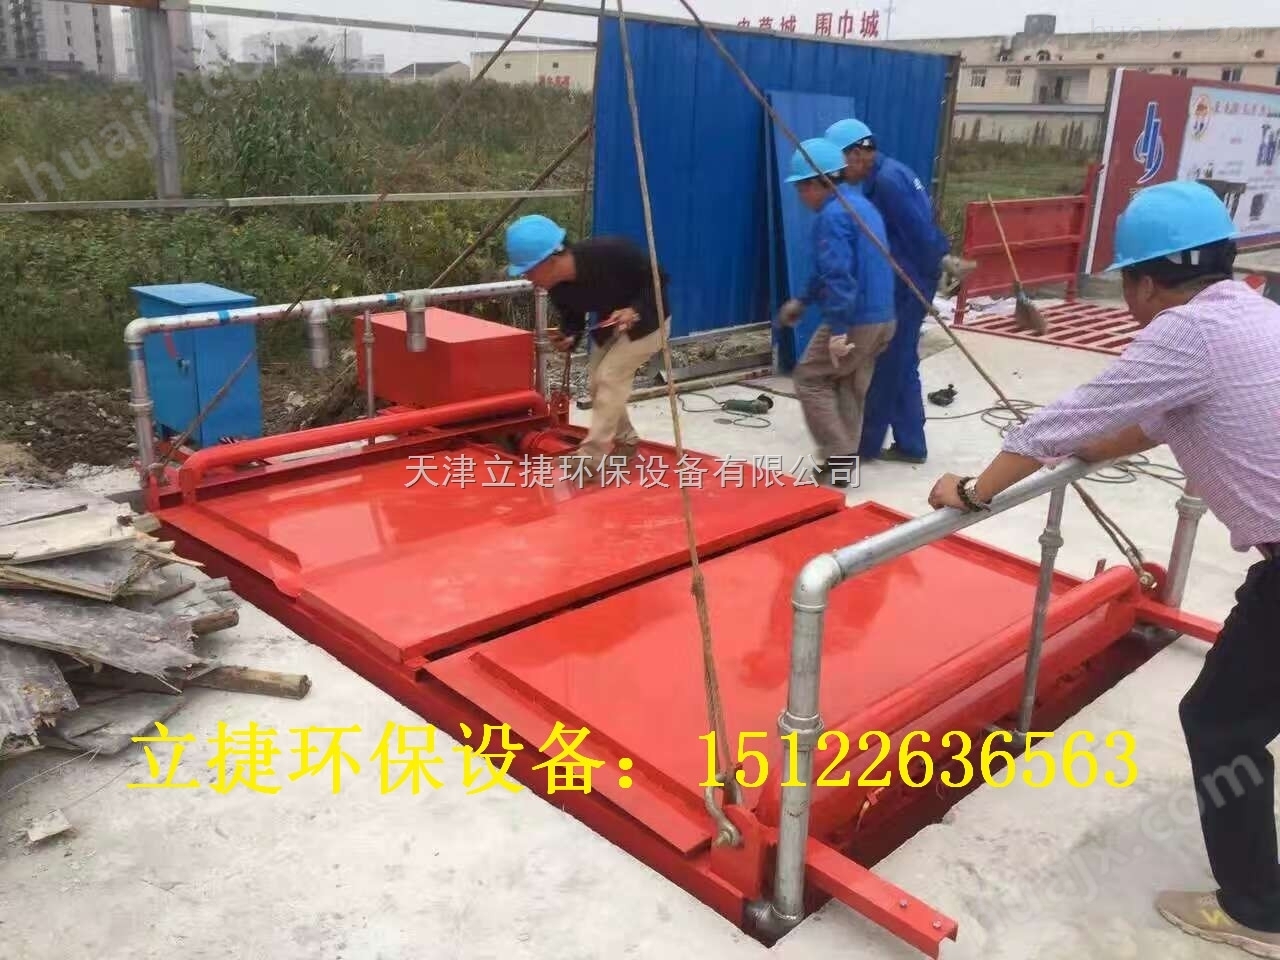 天津滨海新区滚轴式八轴洗轮机立捷jklj-110-g